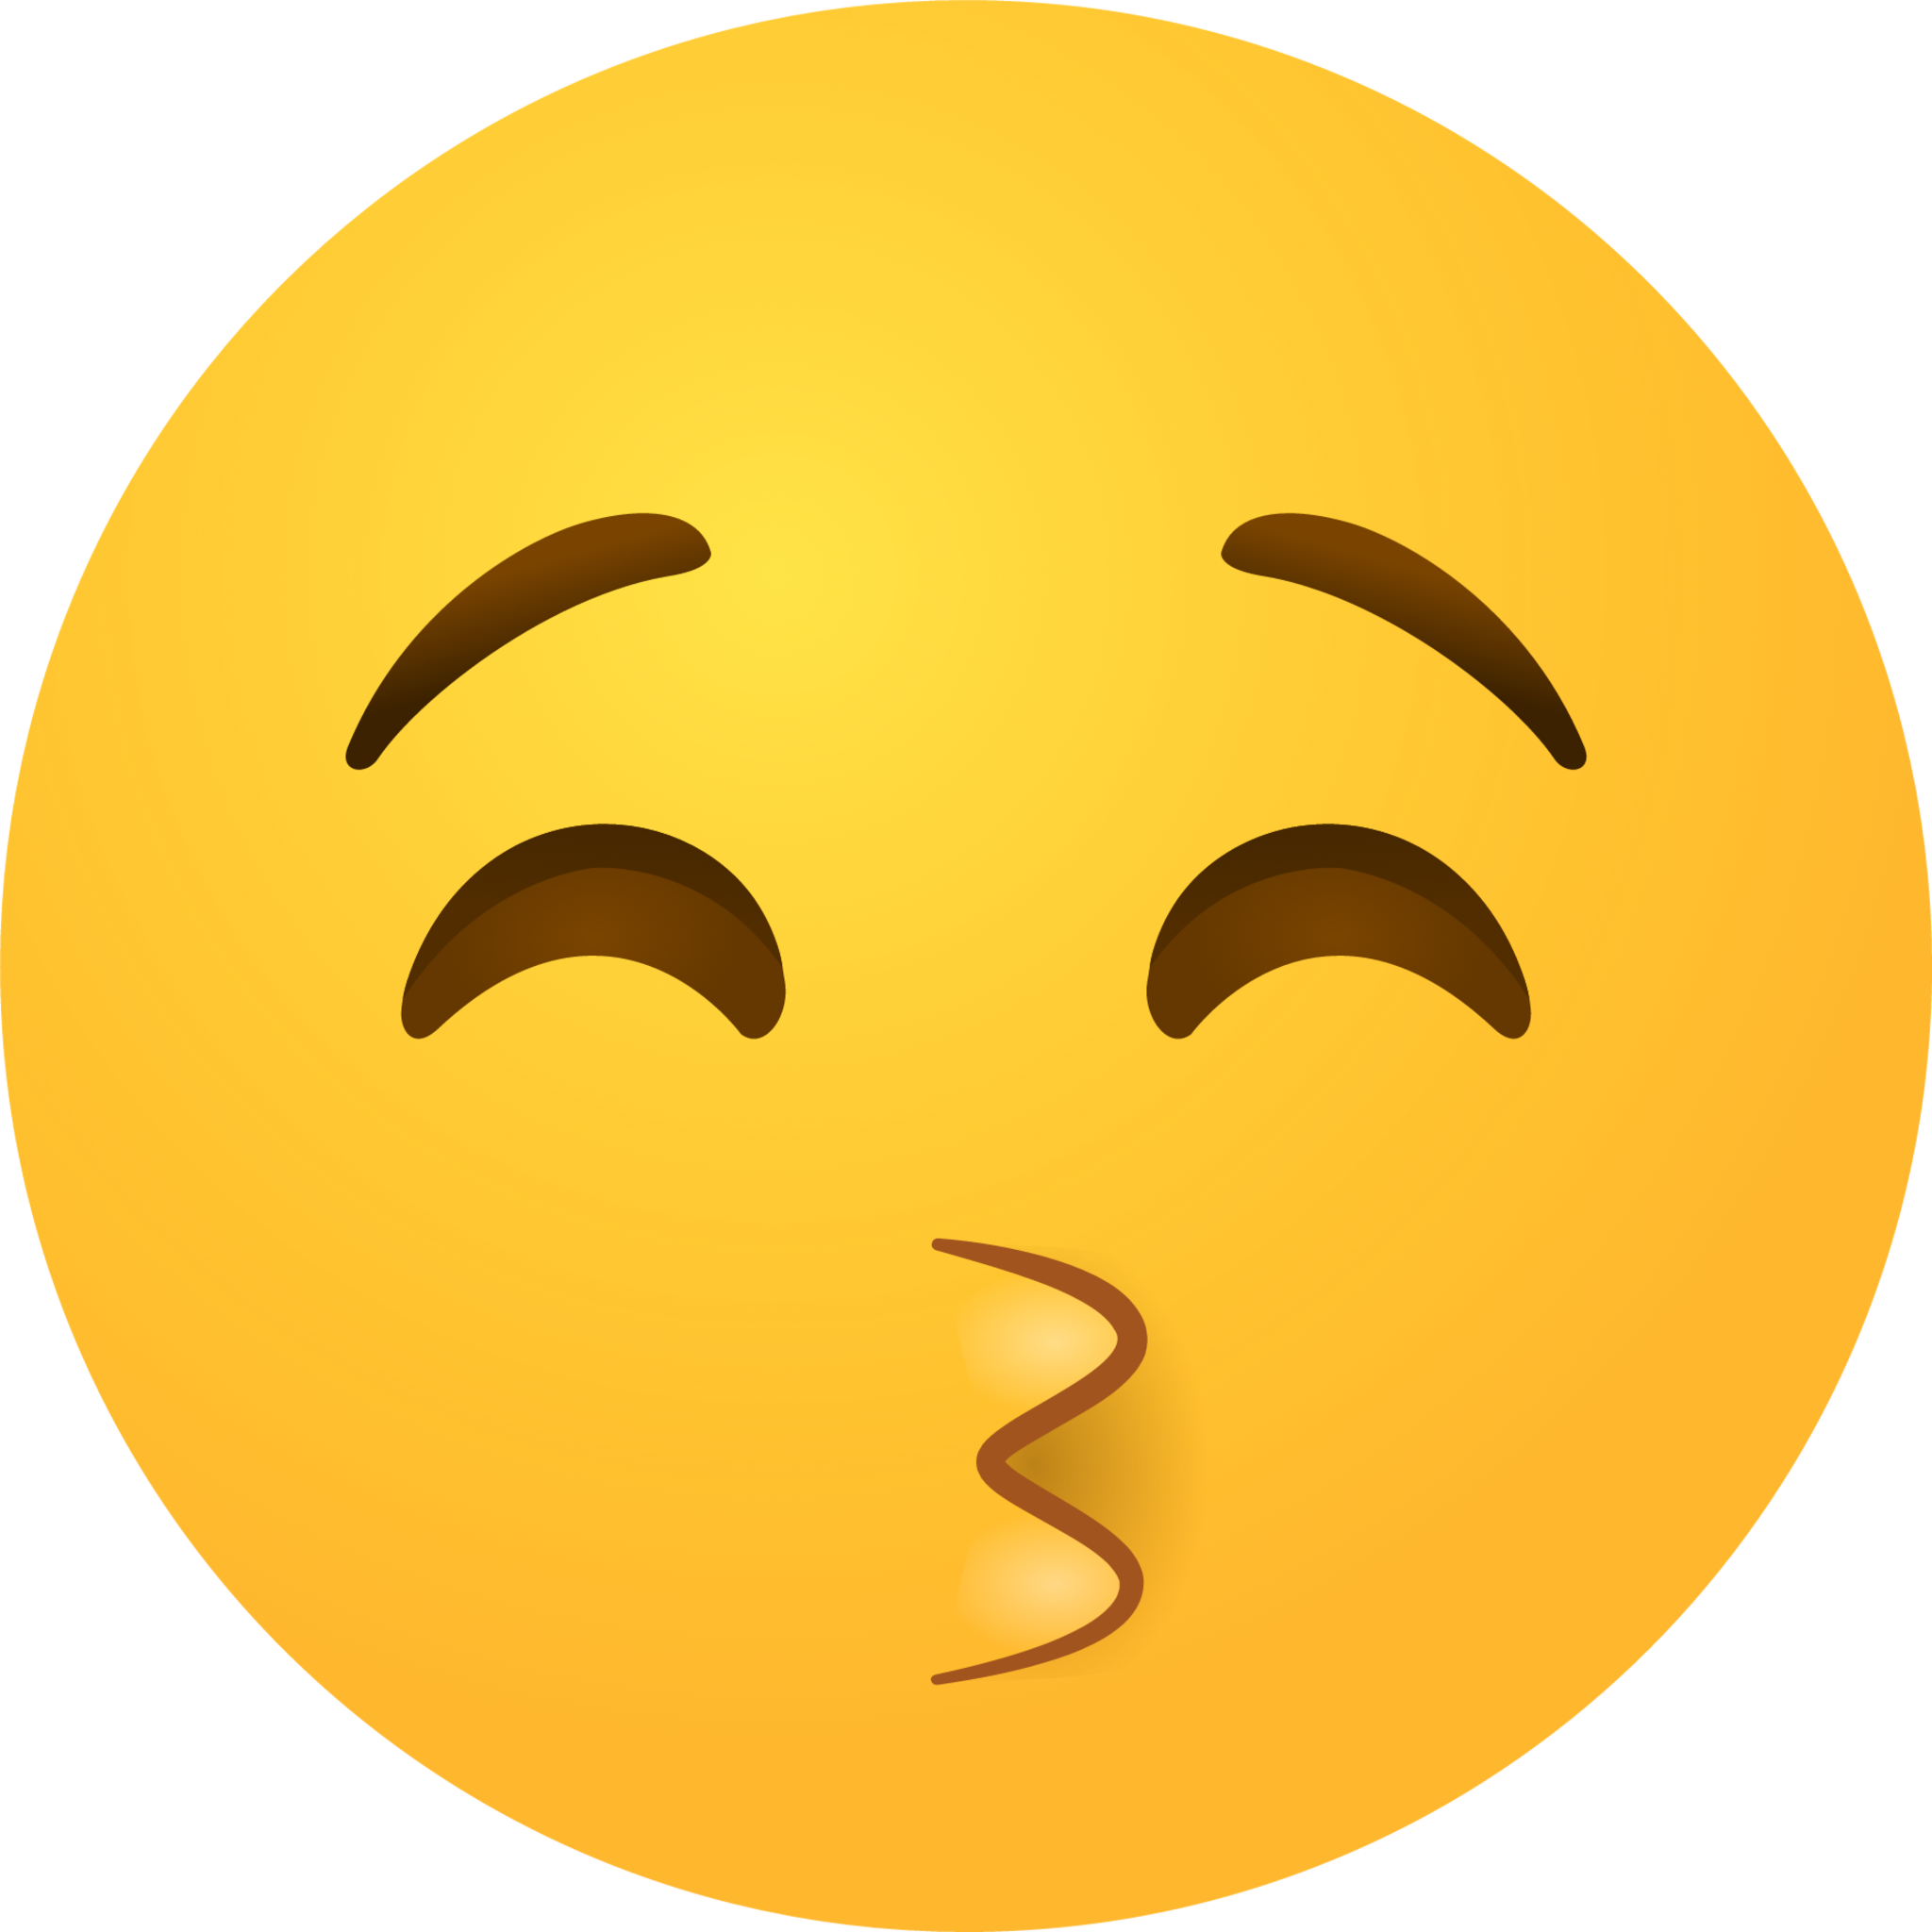 Kissing face with smiling eyes emoji emoji